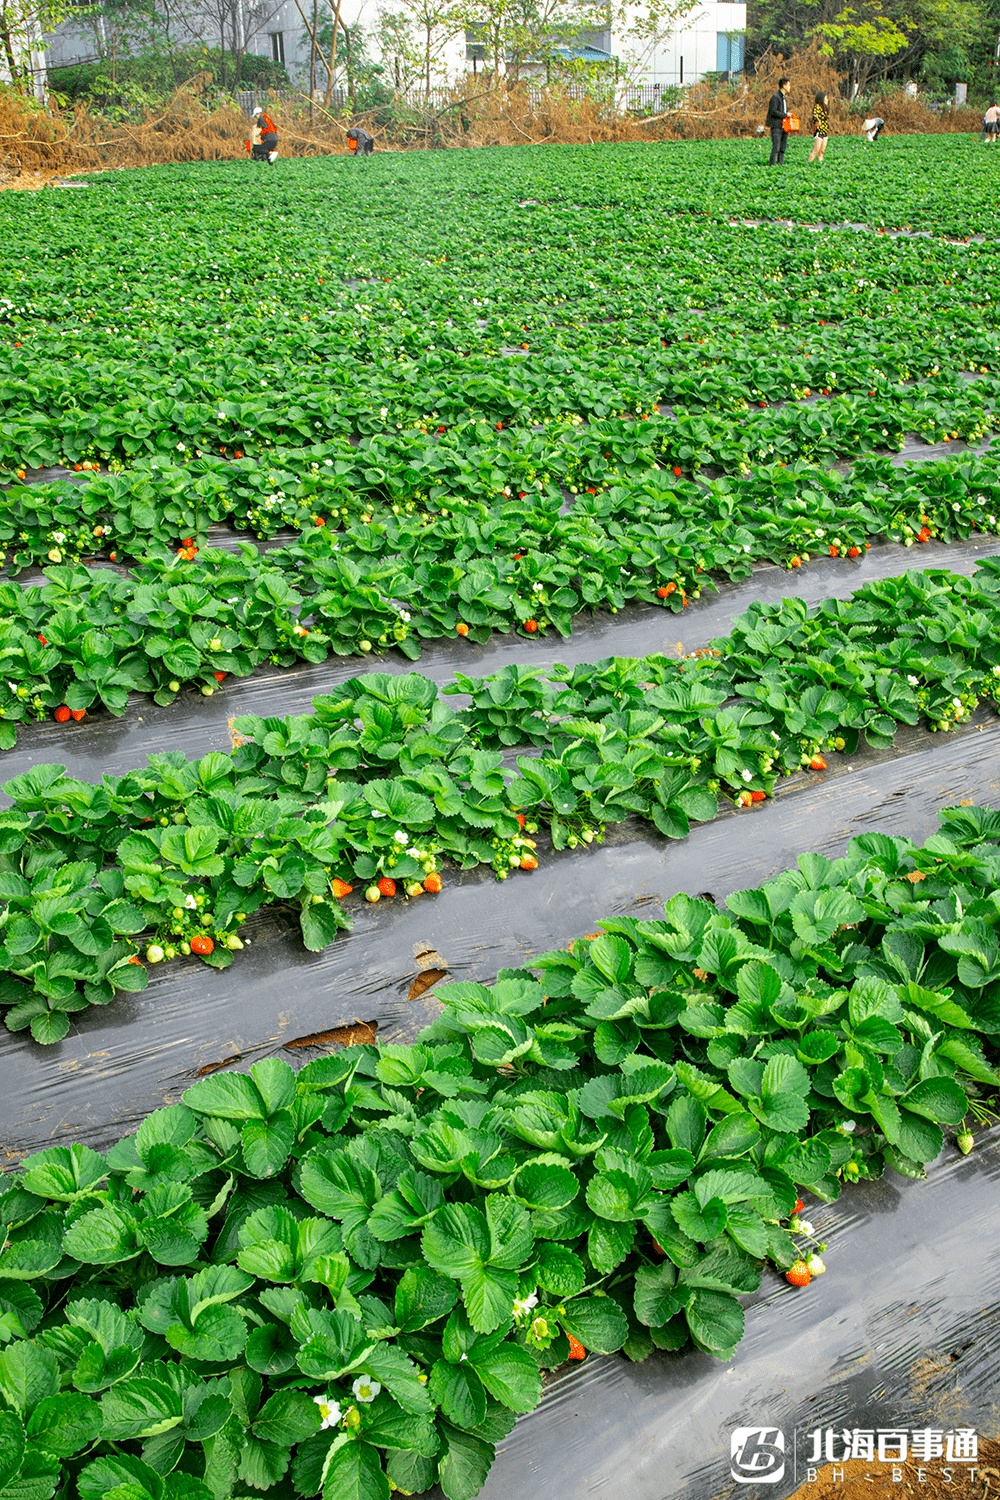 据说是 北海市区最大的草莓基地,有40亩的草莓田,里面种植了牛奶草莓.